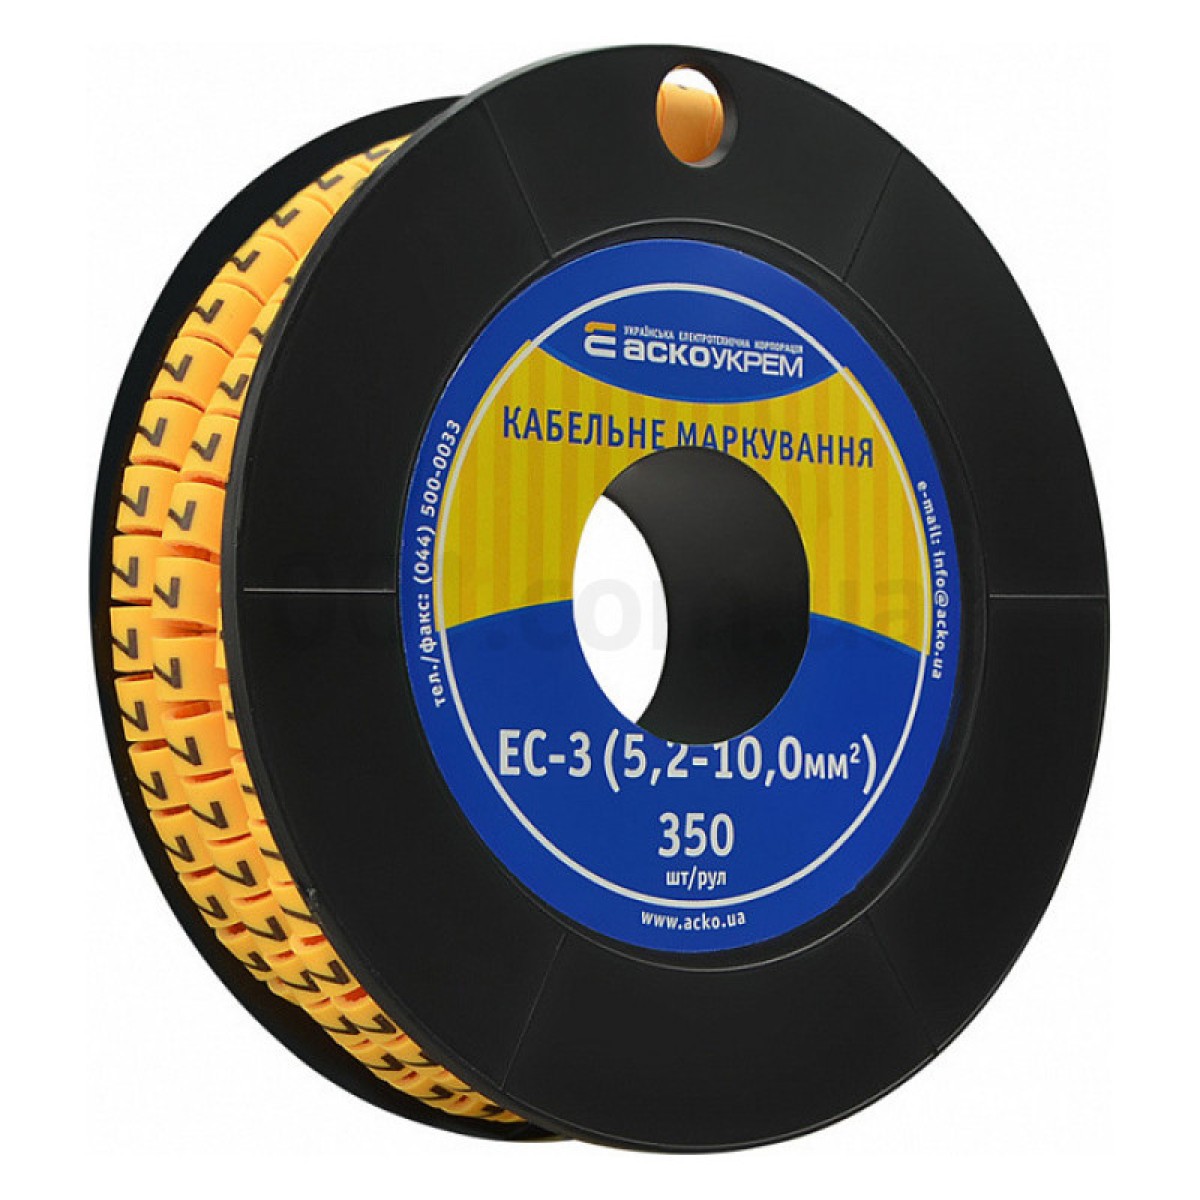 Маркування ЕС-3 для кабелю 5,2-10,0 мм² символ «7» (рулон 250 шт.), АСКО-УКРЕМ 98_98.jpg - фото 1